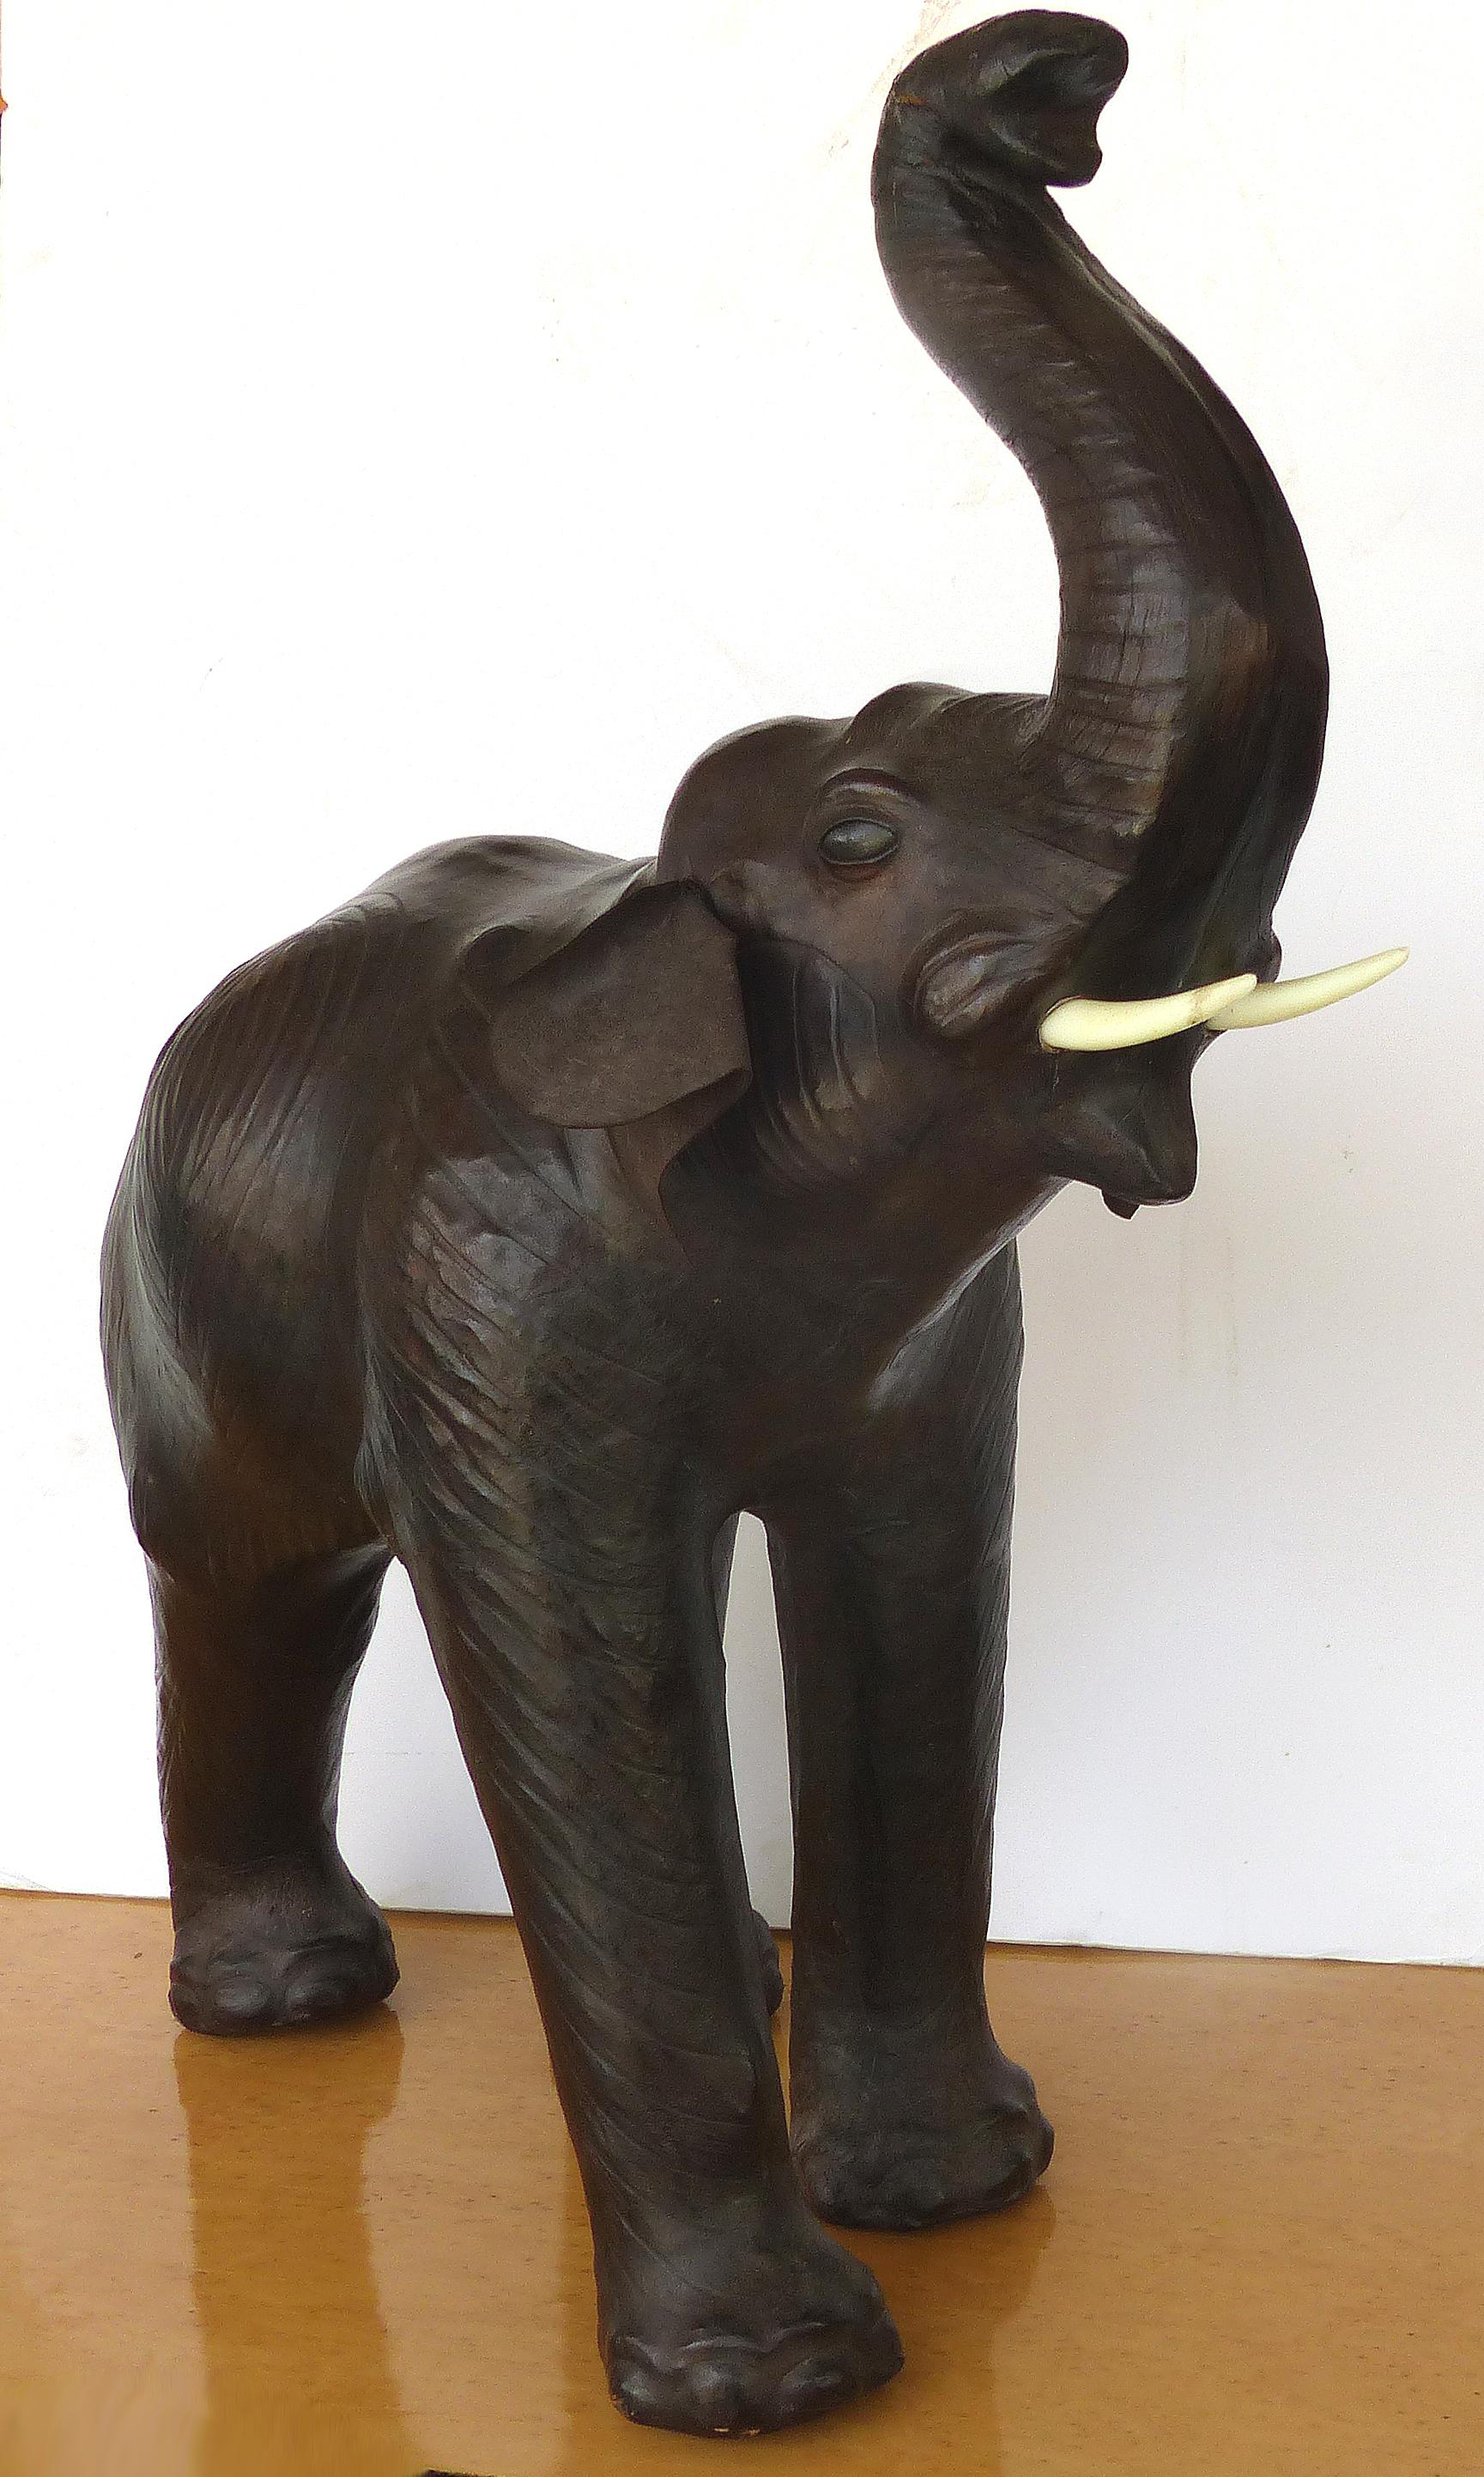 Sculpture en cuir d'un éléphant

La sculpture d'un éléphant revêtu de cuir, finement détaillée, est proposée à la vente. L'éléphant a des yeux en verre incrustés et une queue et des oreilles en cuir. Le corps de l'éléphant est en cuir travaillé qui